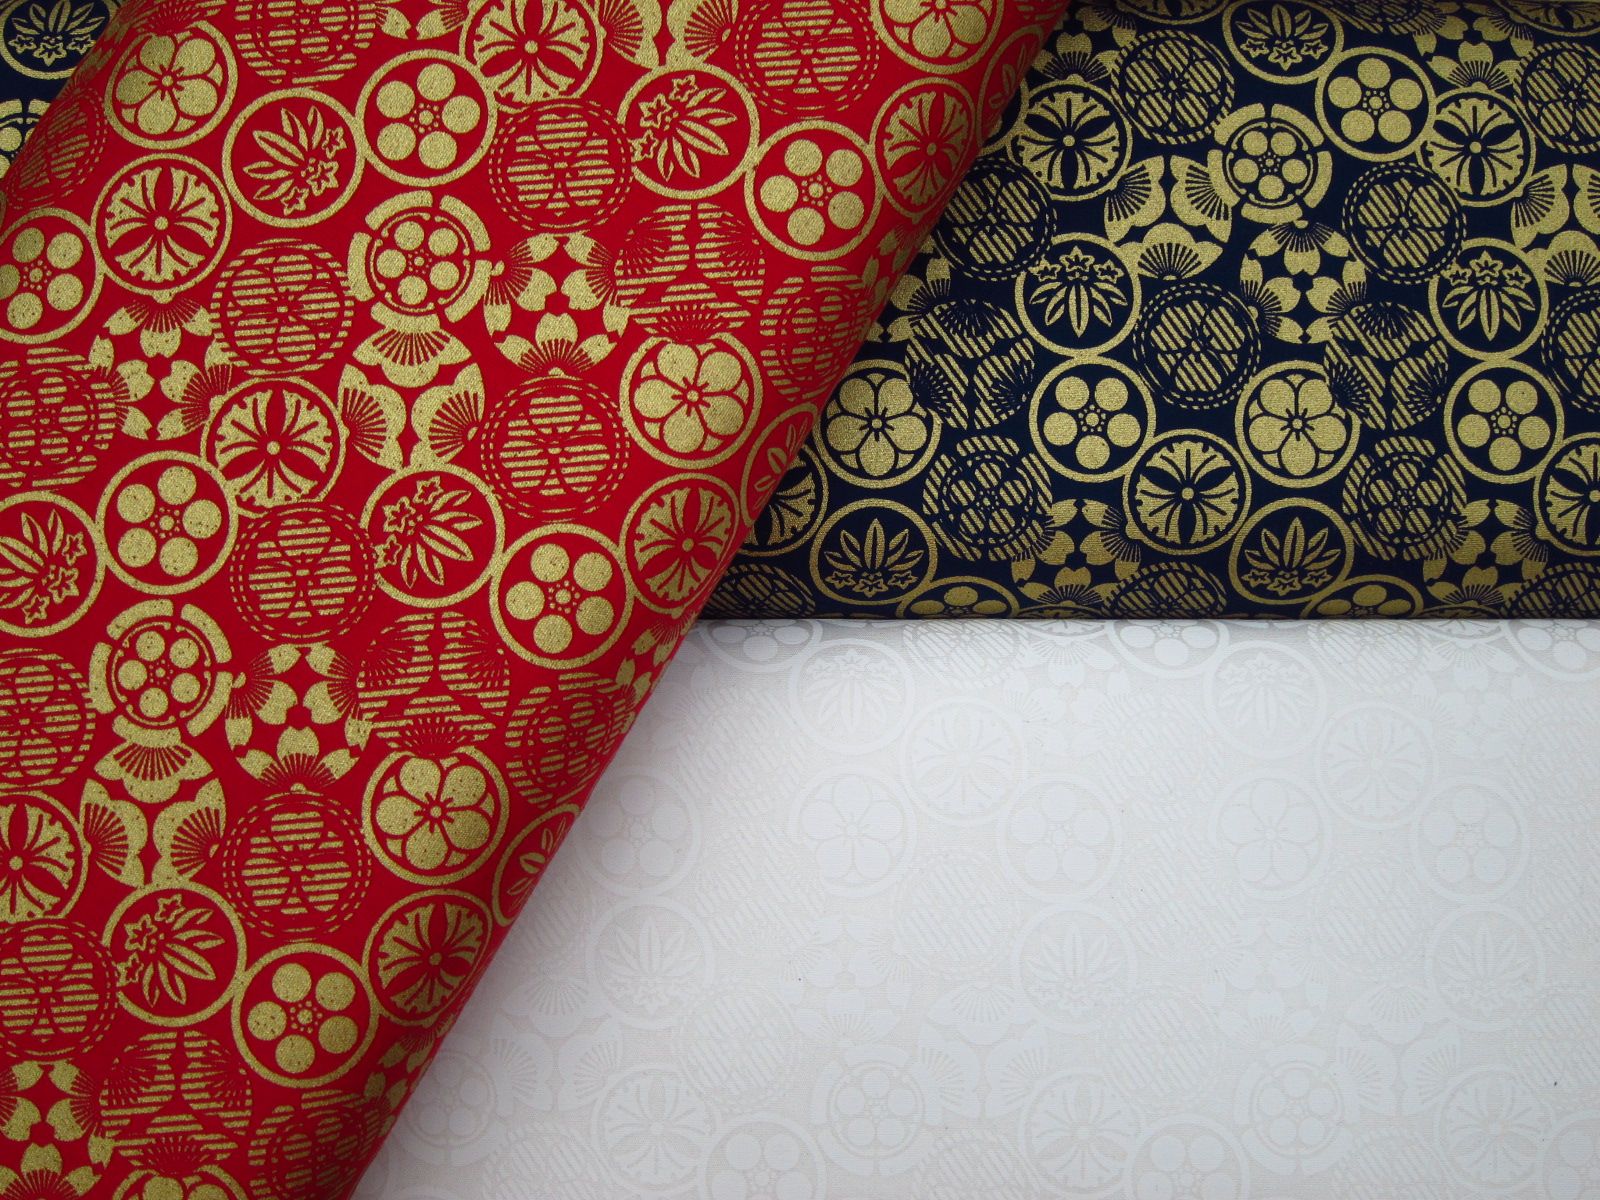 台灣製平織綿布-金蔥日本家徽-紅底、深藍底、白底-100%純綿、台灣製造